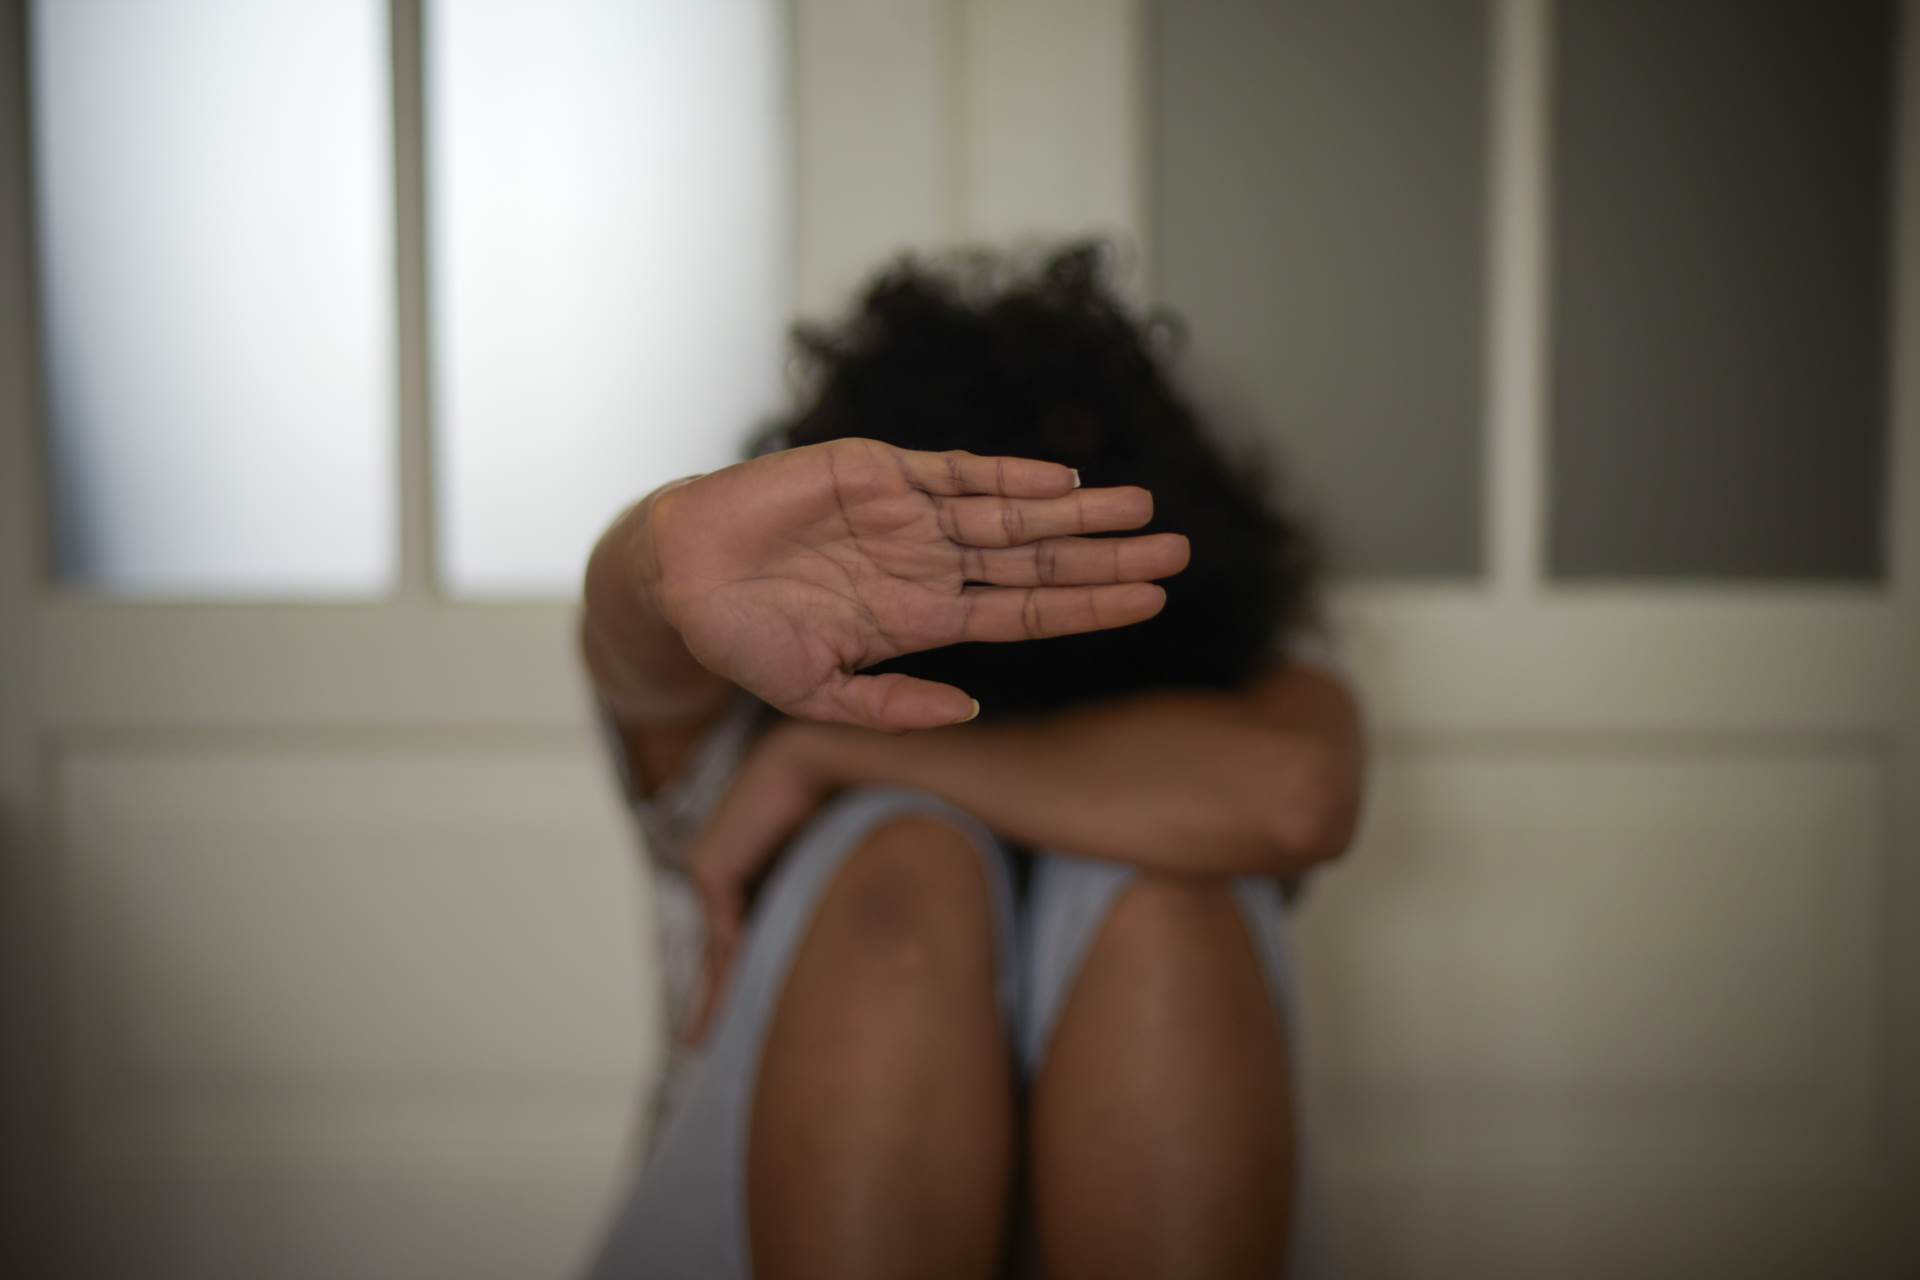  Oteo ženu u Bijeljini i pokušao je silovati 